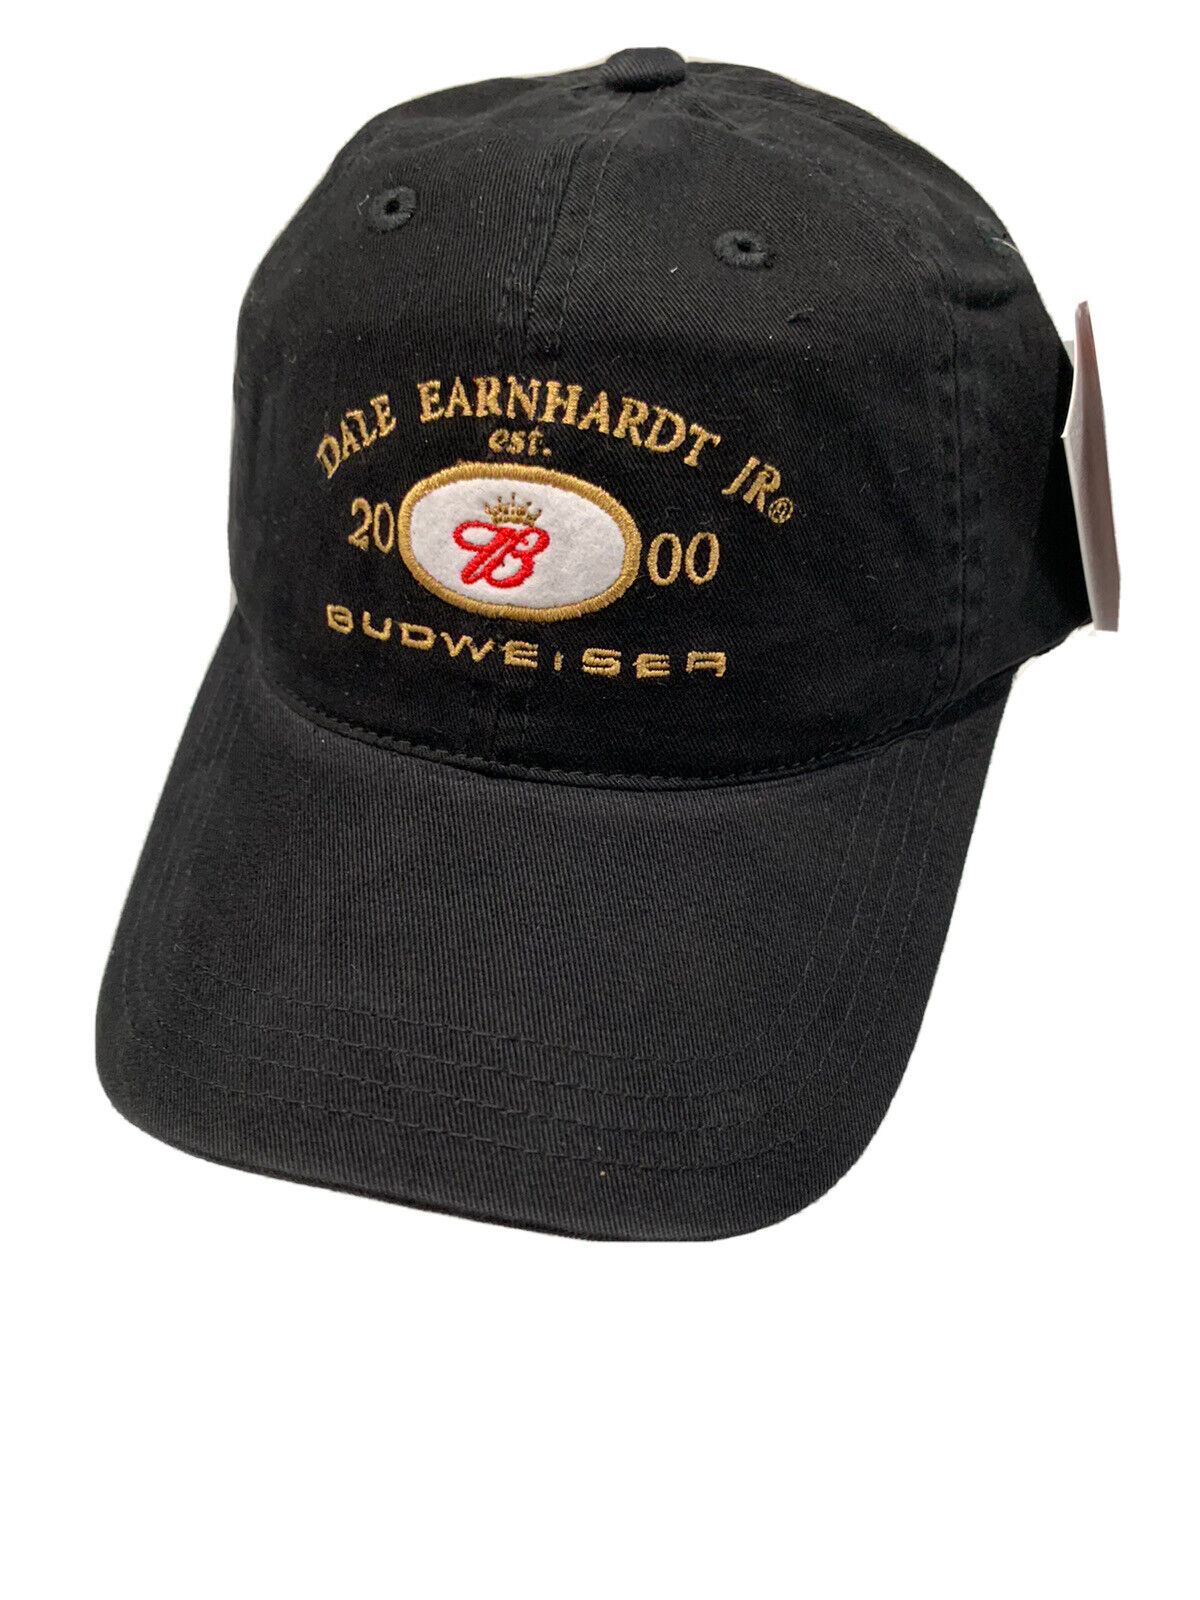 Vintage Dale Earnhardt Jr Budweiser 2000 Strapback Hat Cap Black Adjustable